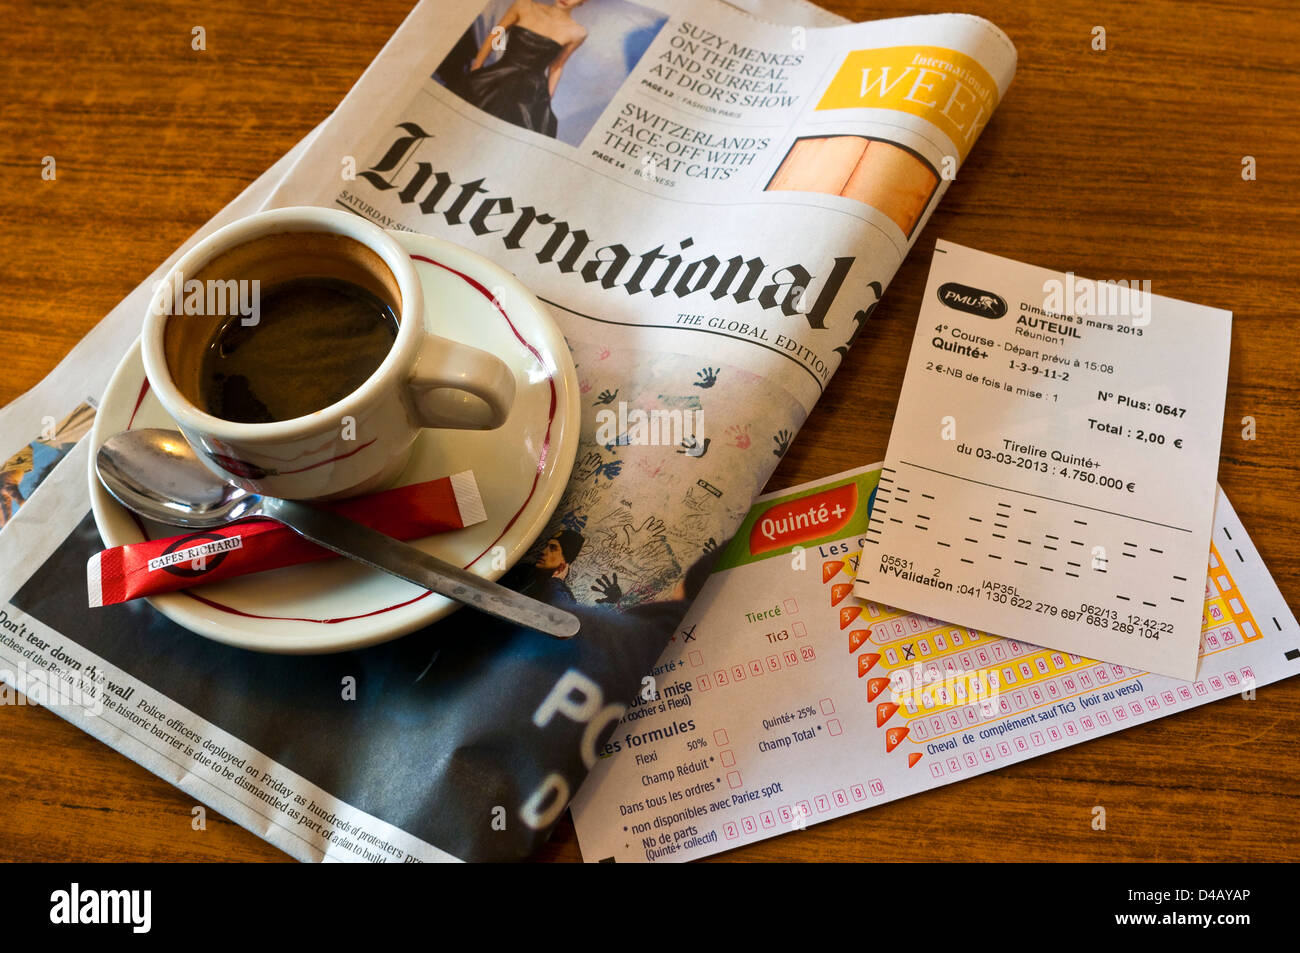 Morgendliche Tasse Kaffee, Wetten rutscht und International Herald Tribune Zeitung - Frankreich. Stockfoto